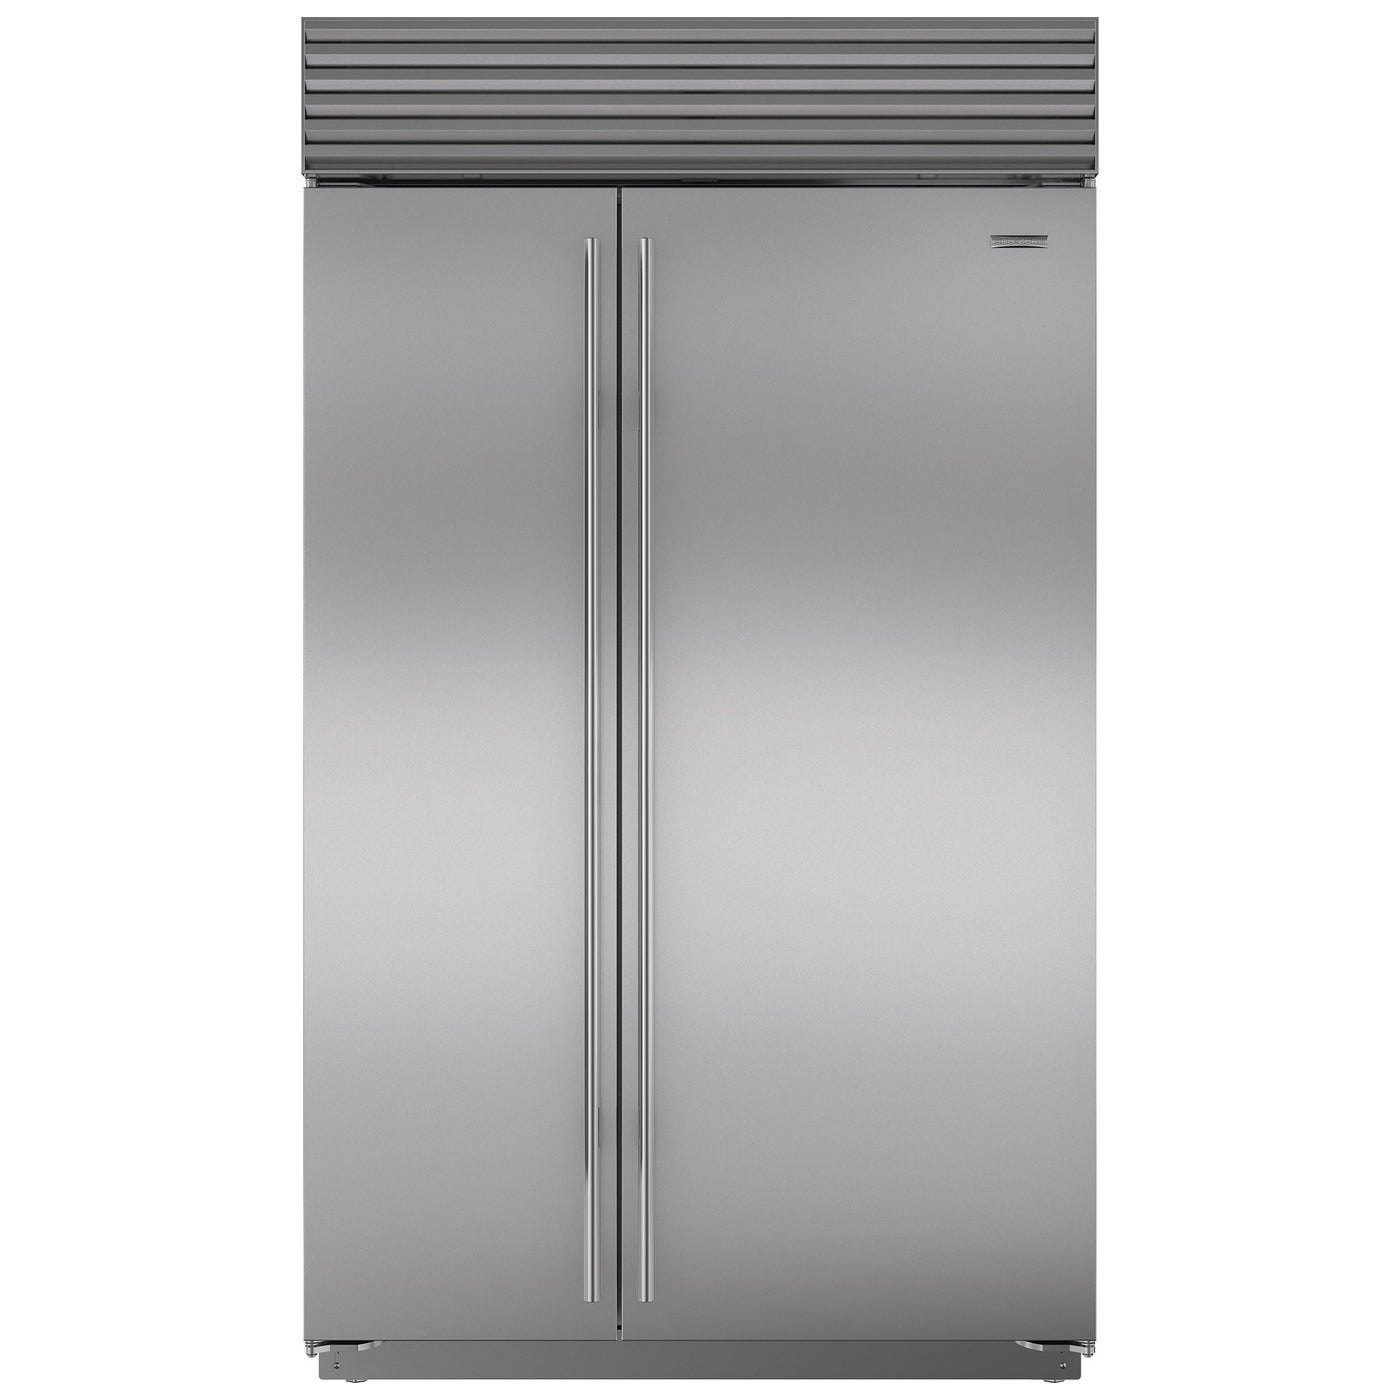 SubZero-refrigerator-CL4850S/S/P